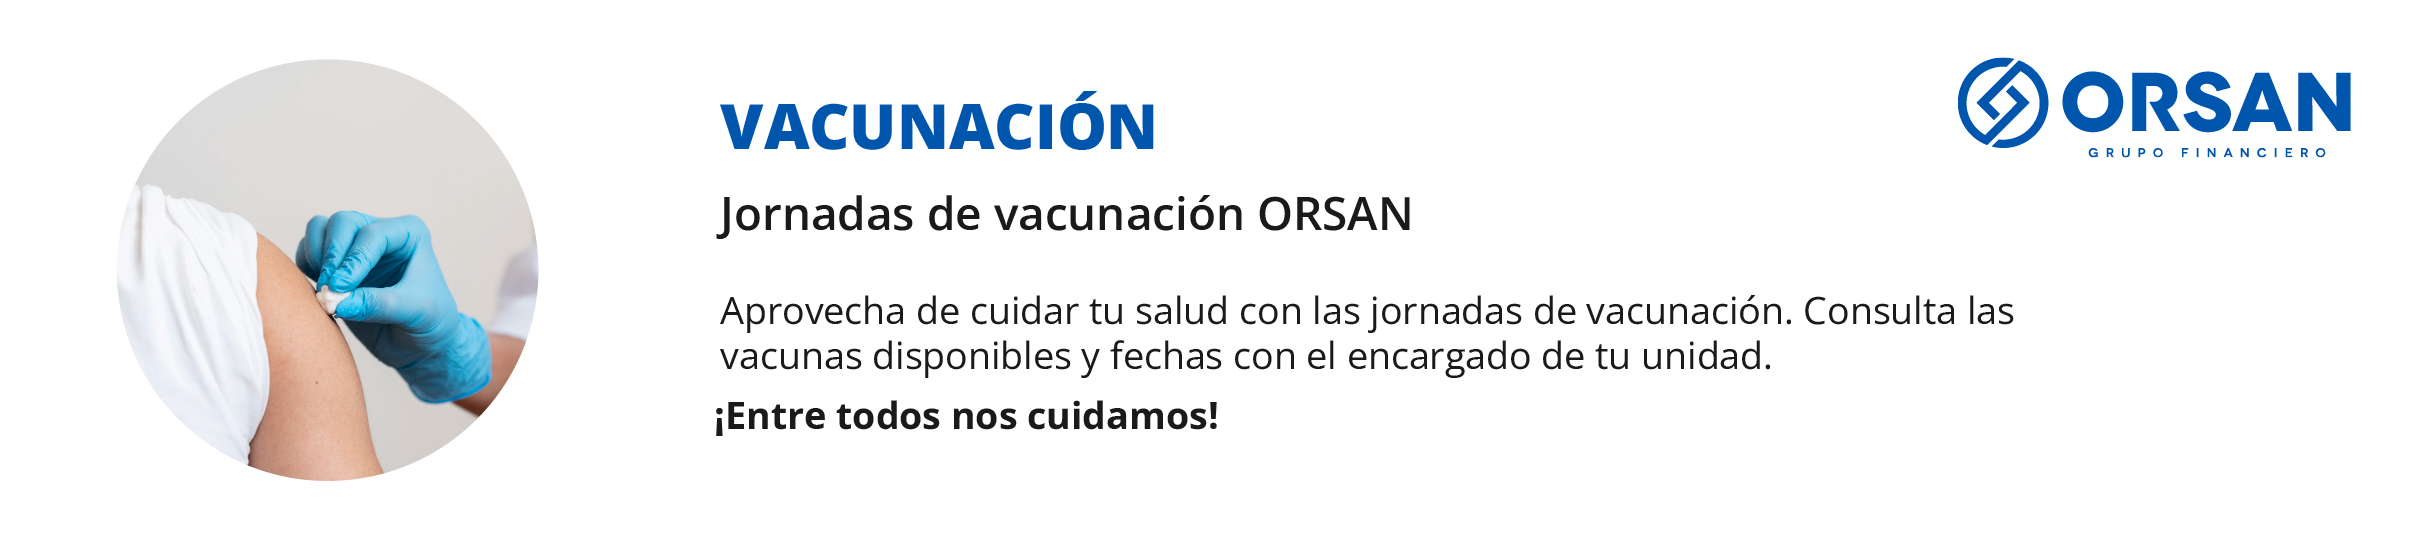 Vacunación Orsan